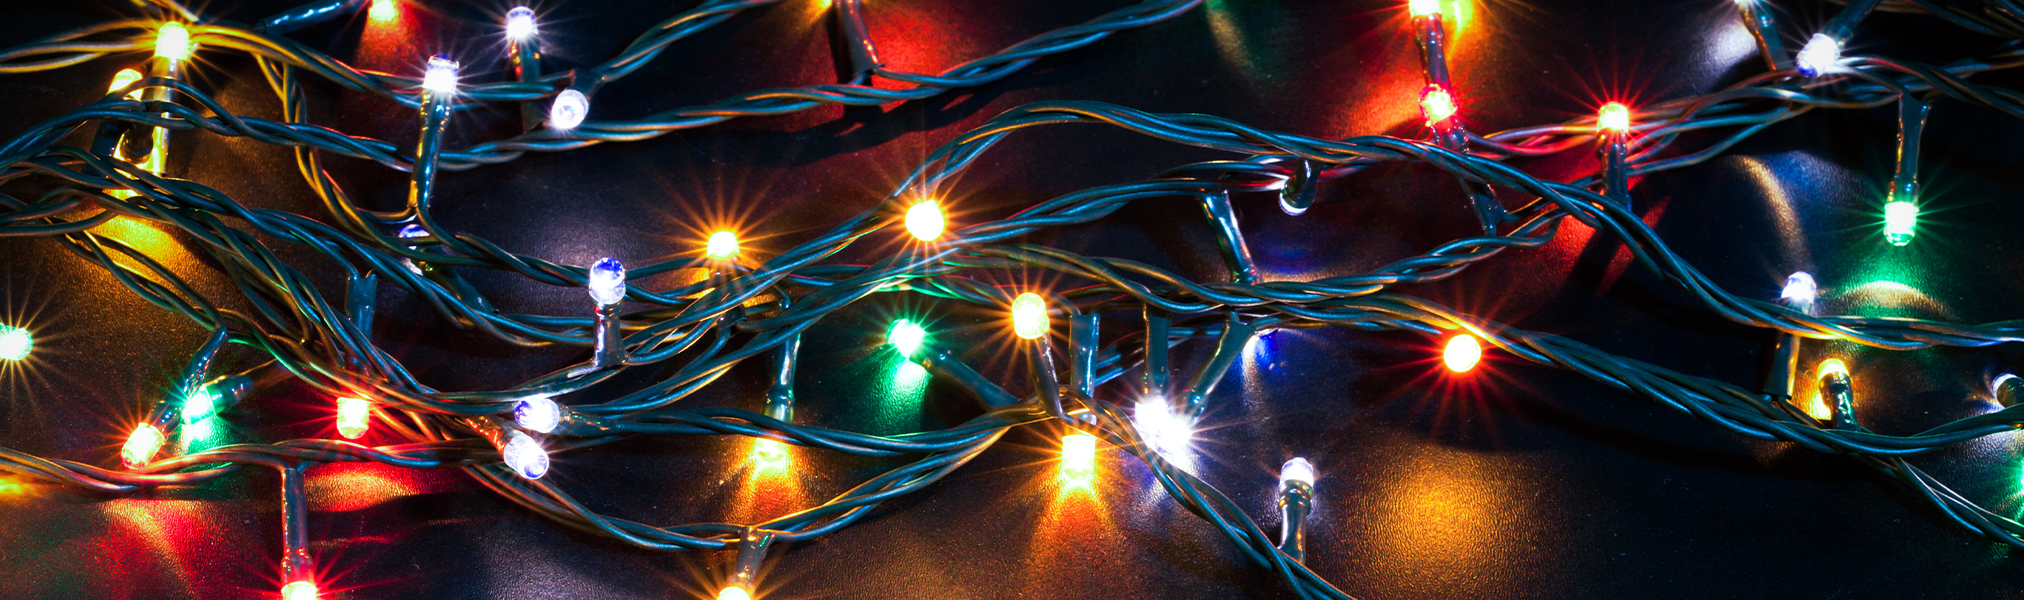 Công nghệ chiếu sáng mừng Giáng sinh mang đến một cảm giác kỳ diệu và lạ lẫm cho người xem. Cùng trải nghiệm tuyệt vời này thông qua những hình ảnh ánh sáng độc đáo, tạo nên bầu không khí trang trọng đón chào Giáng sinh.